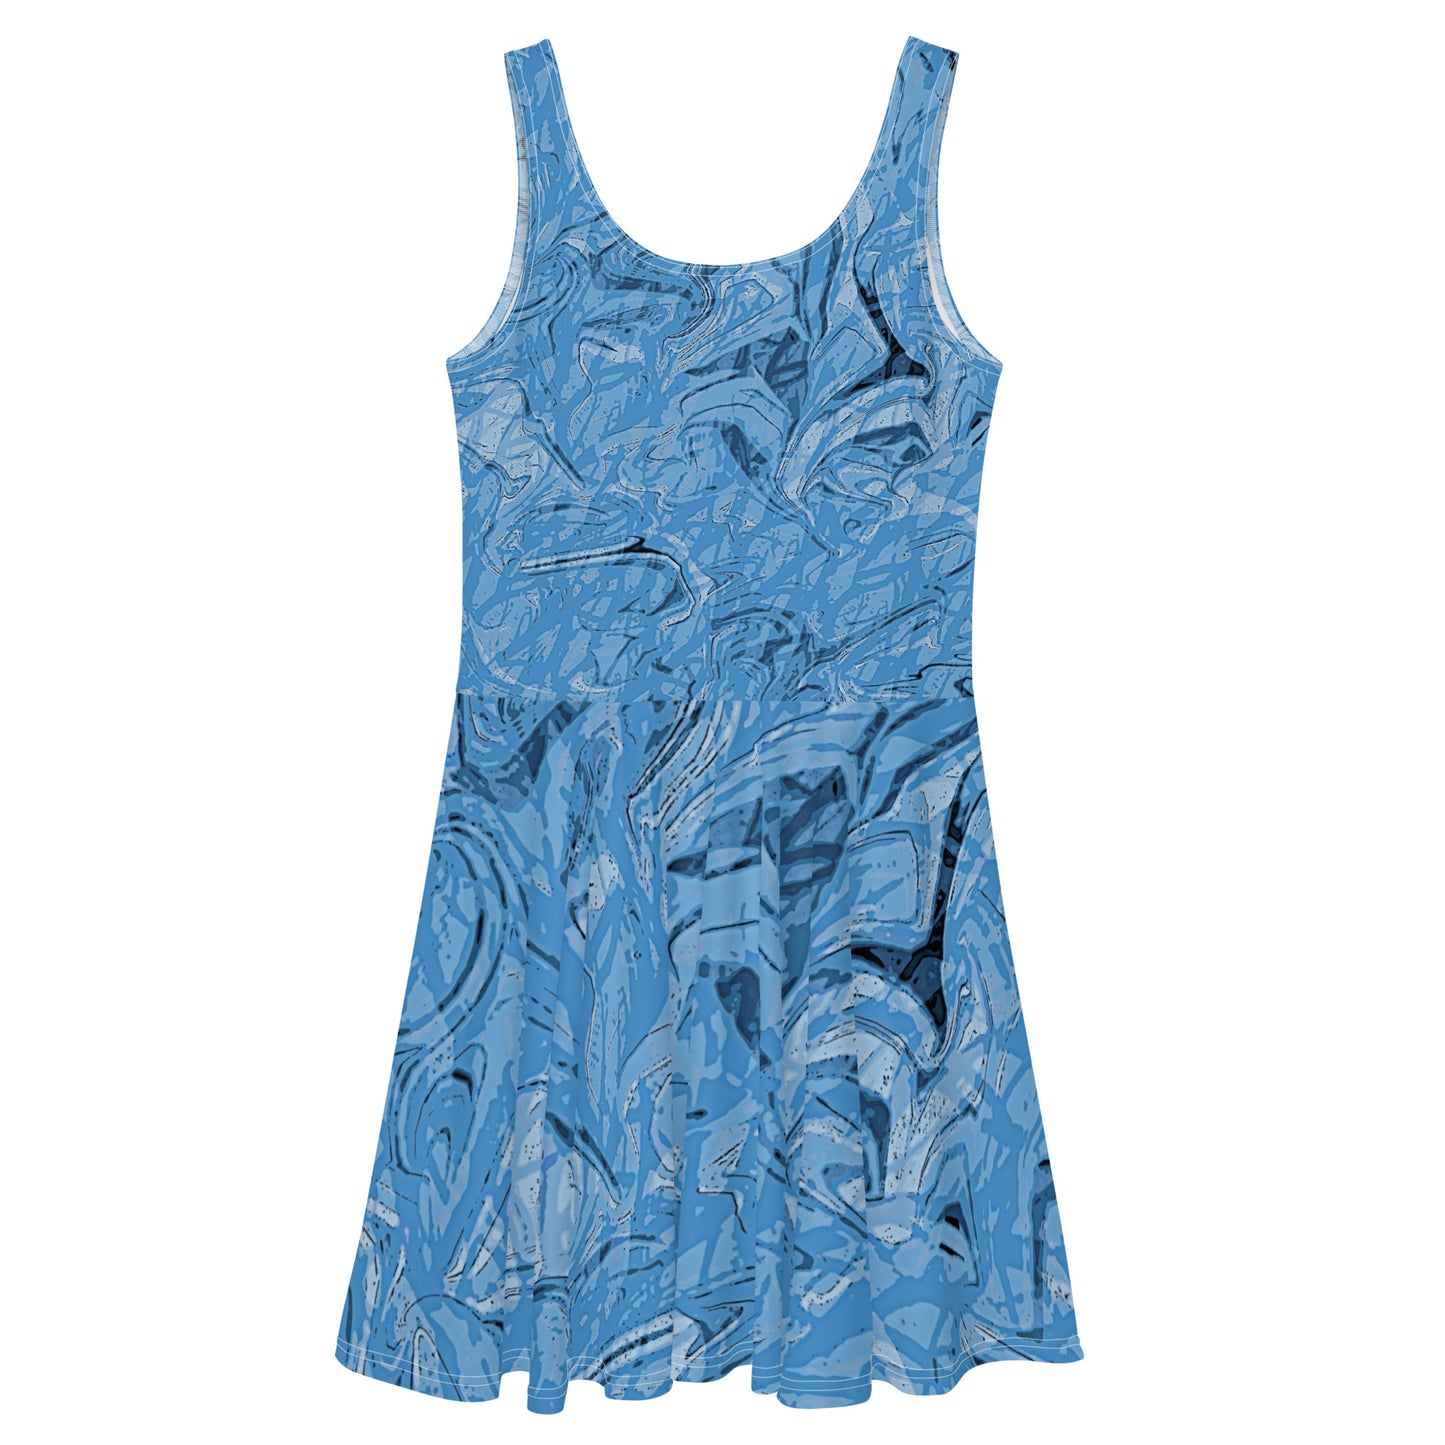 Blue Skater Dress